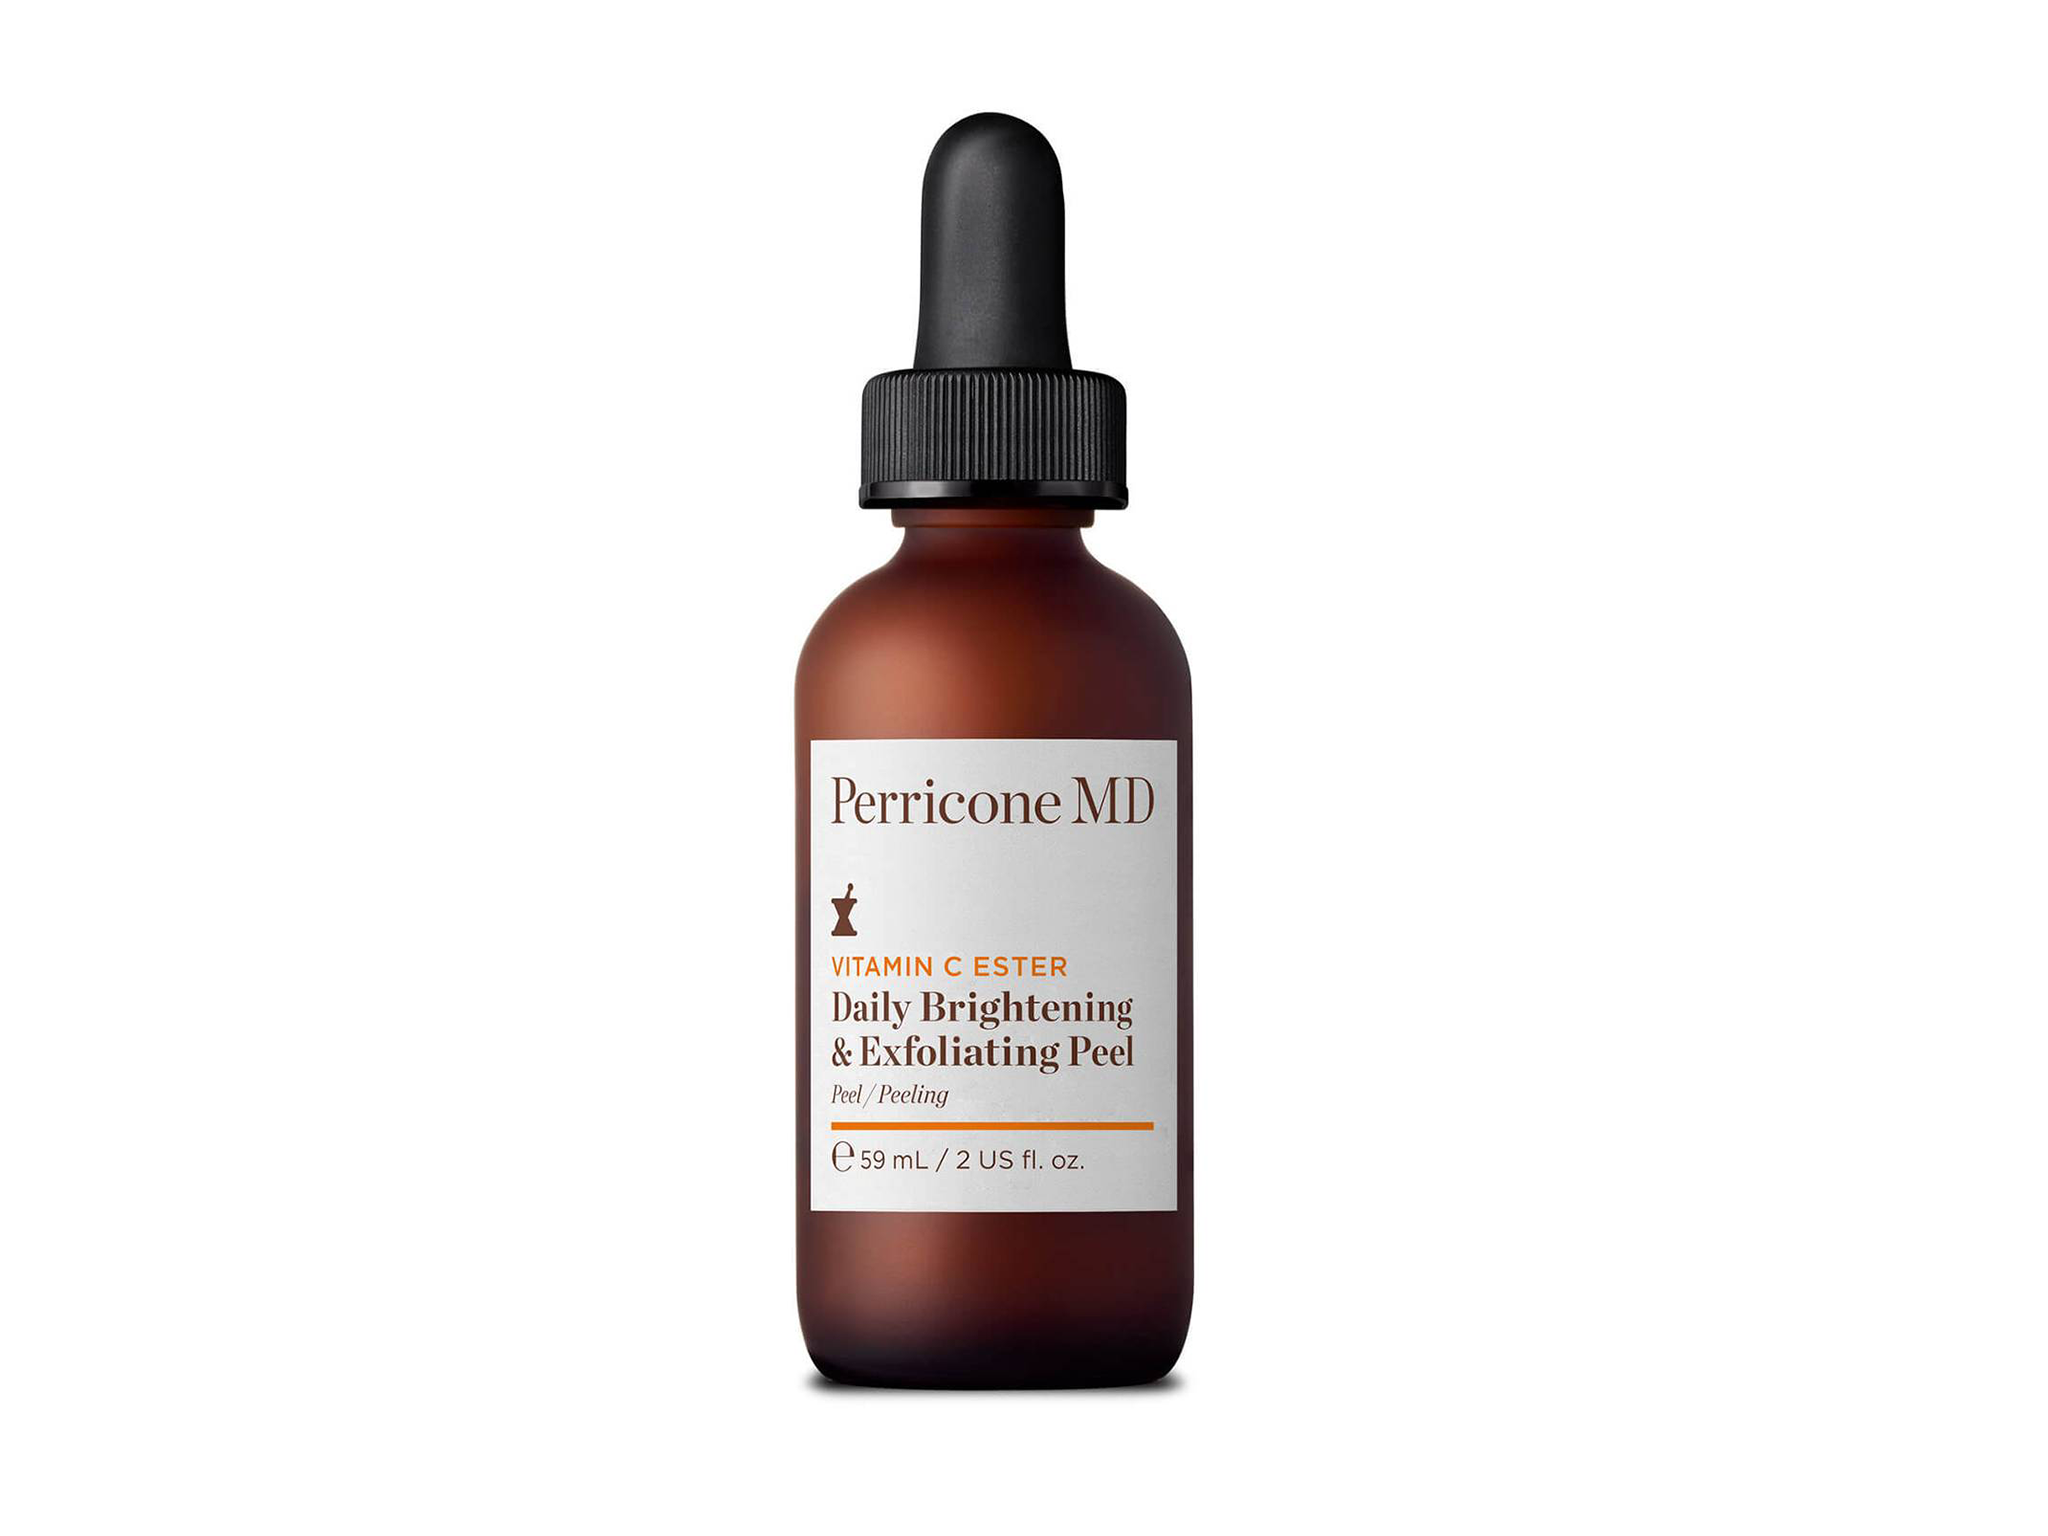 Perricone MD vitamin C ester daily brightening & exfoliating peel